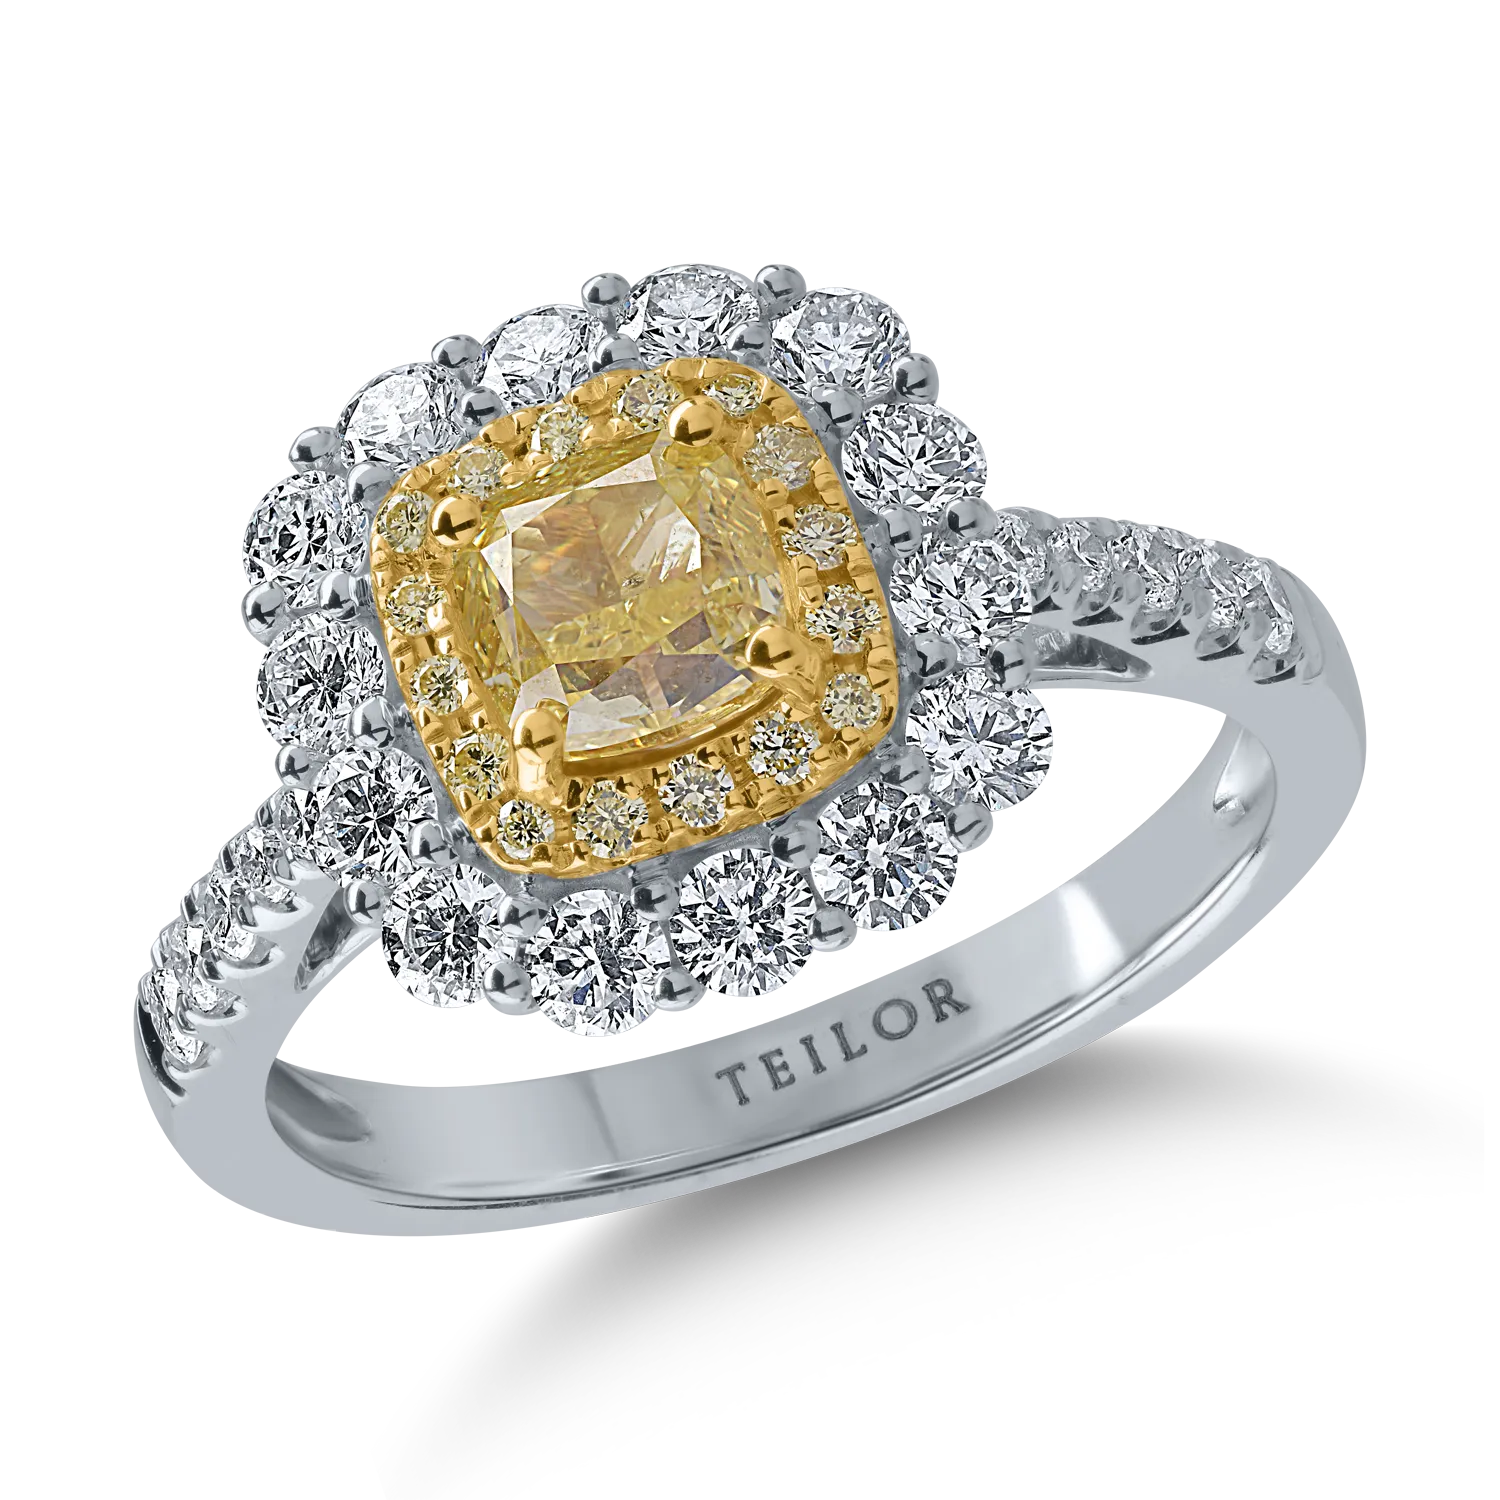 Пръстен от бяло-жълто злато с 1.12кt жълти диаманти и 0.88кt прозрачни диаманти